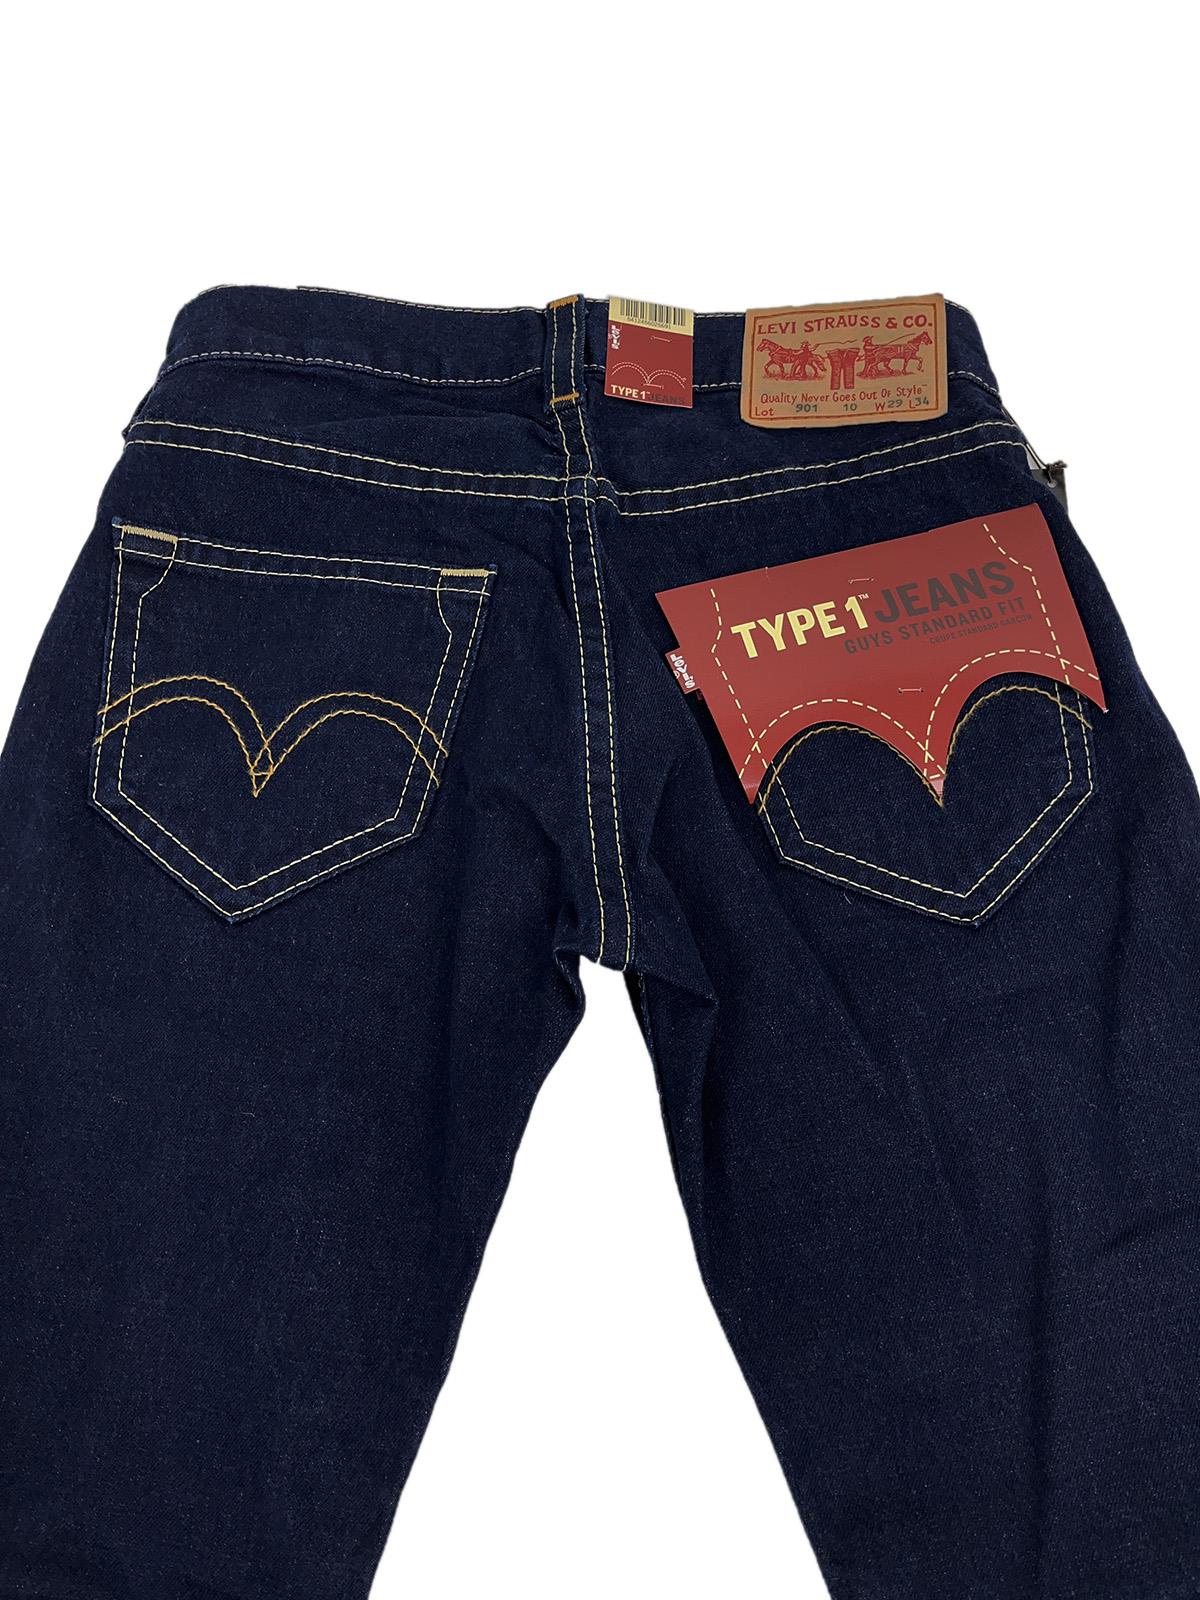 LEVI'S Type 1 00901 Jeans